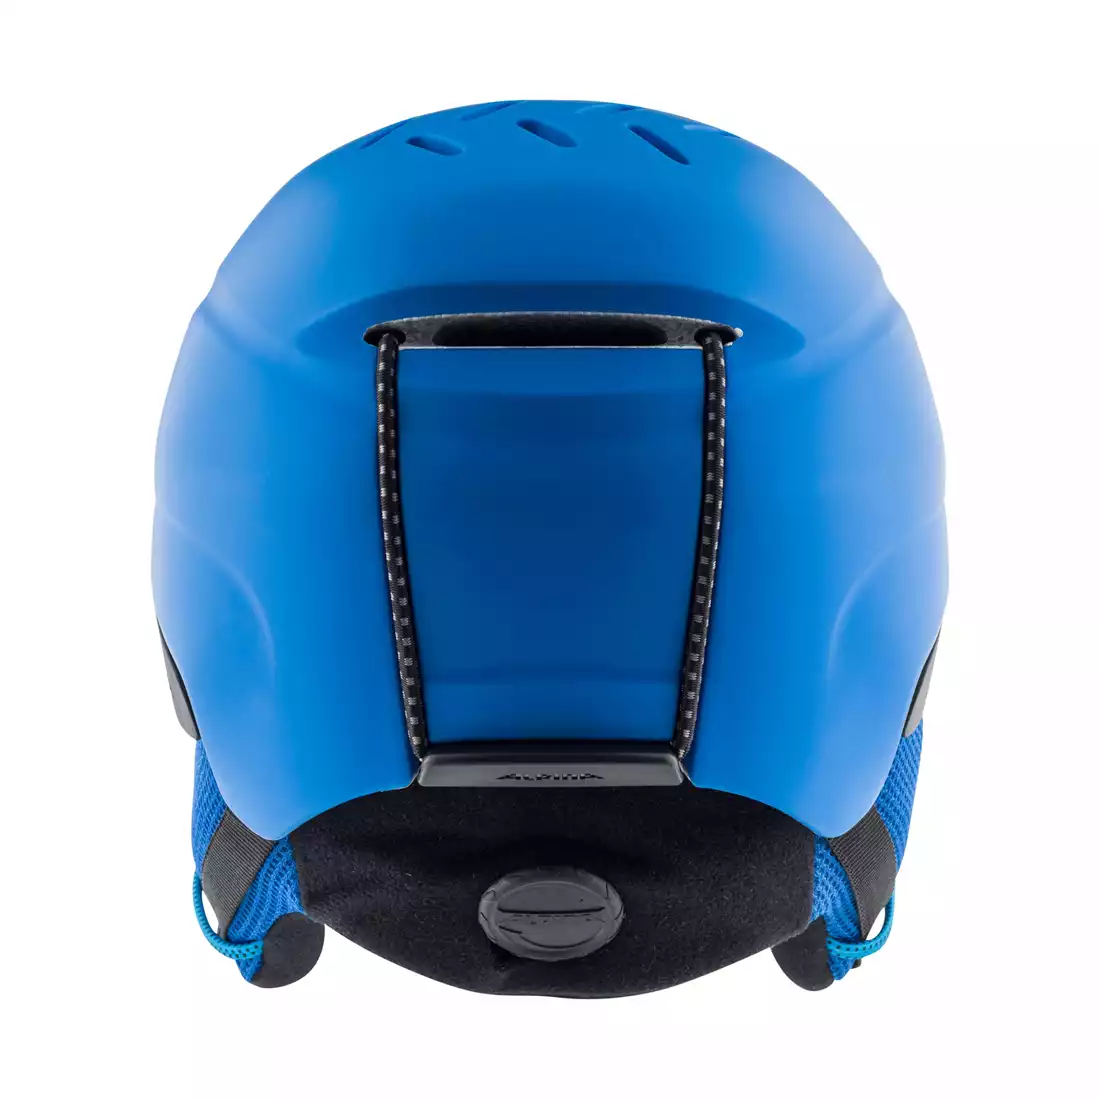 ALPINA PIZI dětská lyžařská/snowboardová helma, blue matt